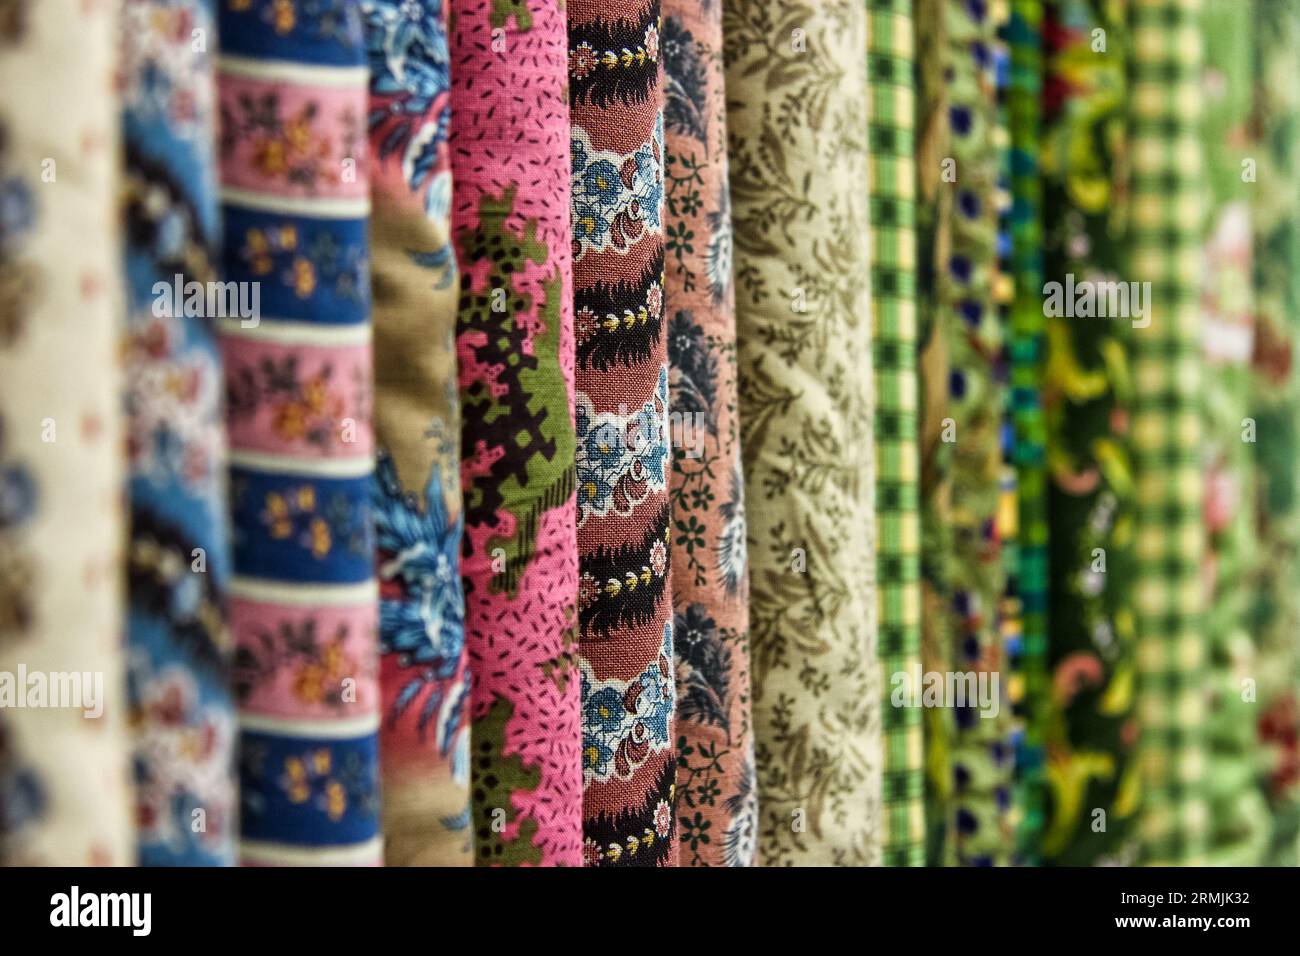 Una fila di tessuti con motivi e colori diversi. La foto viene scattata da una prospettiva diretta e cattura i dettagli del tessuto. Foto Stock